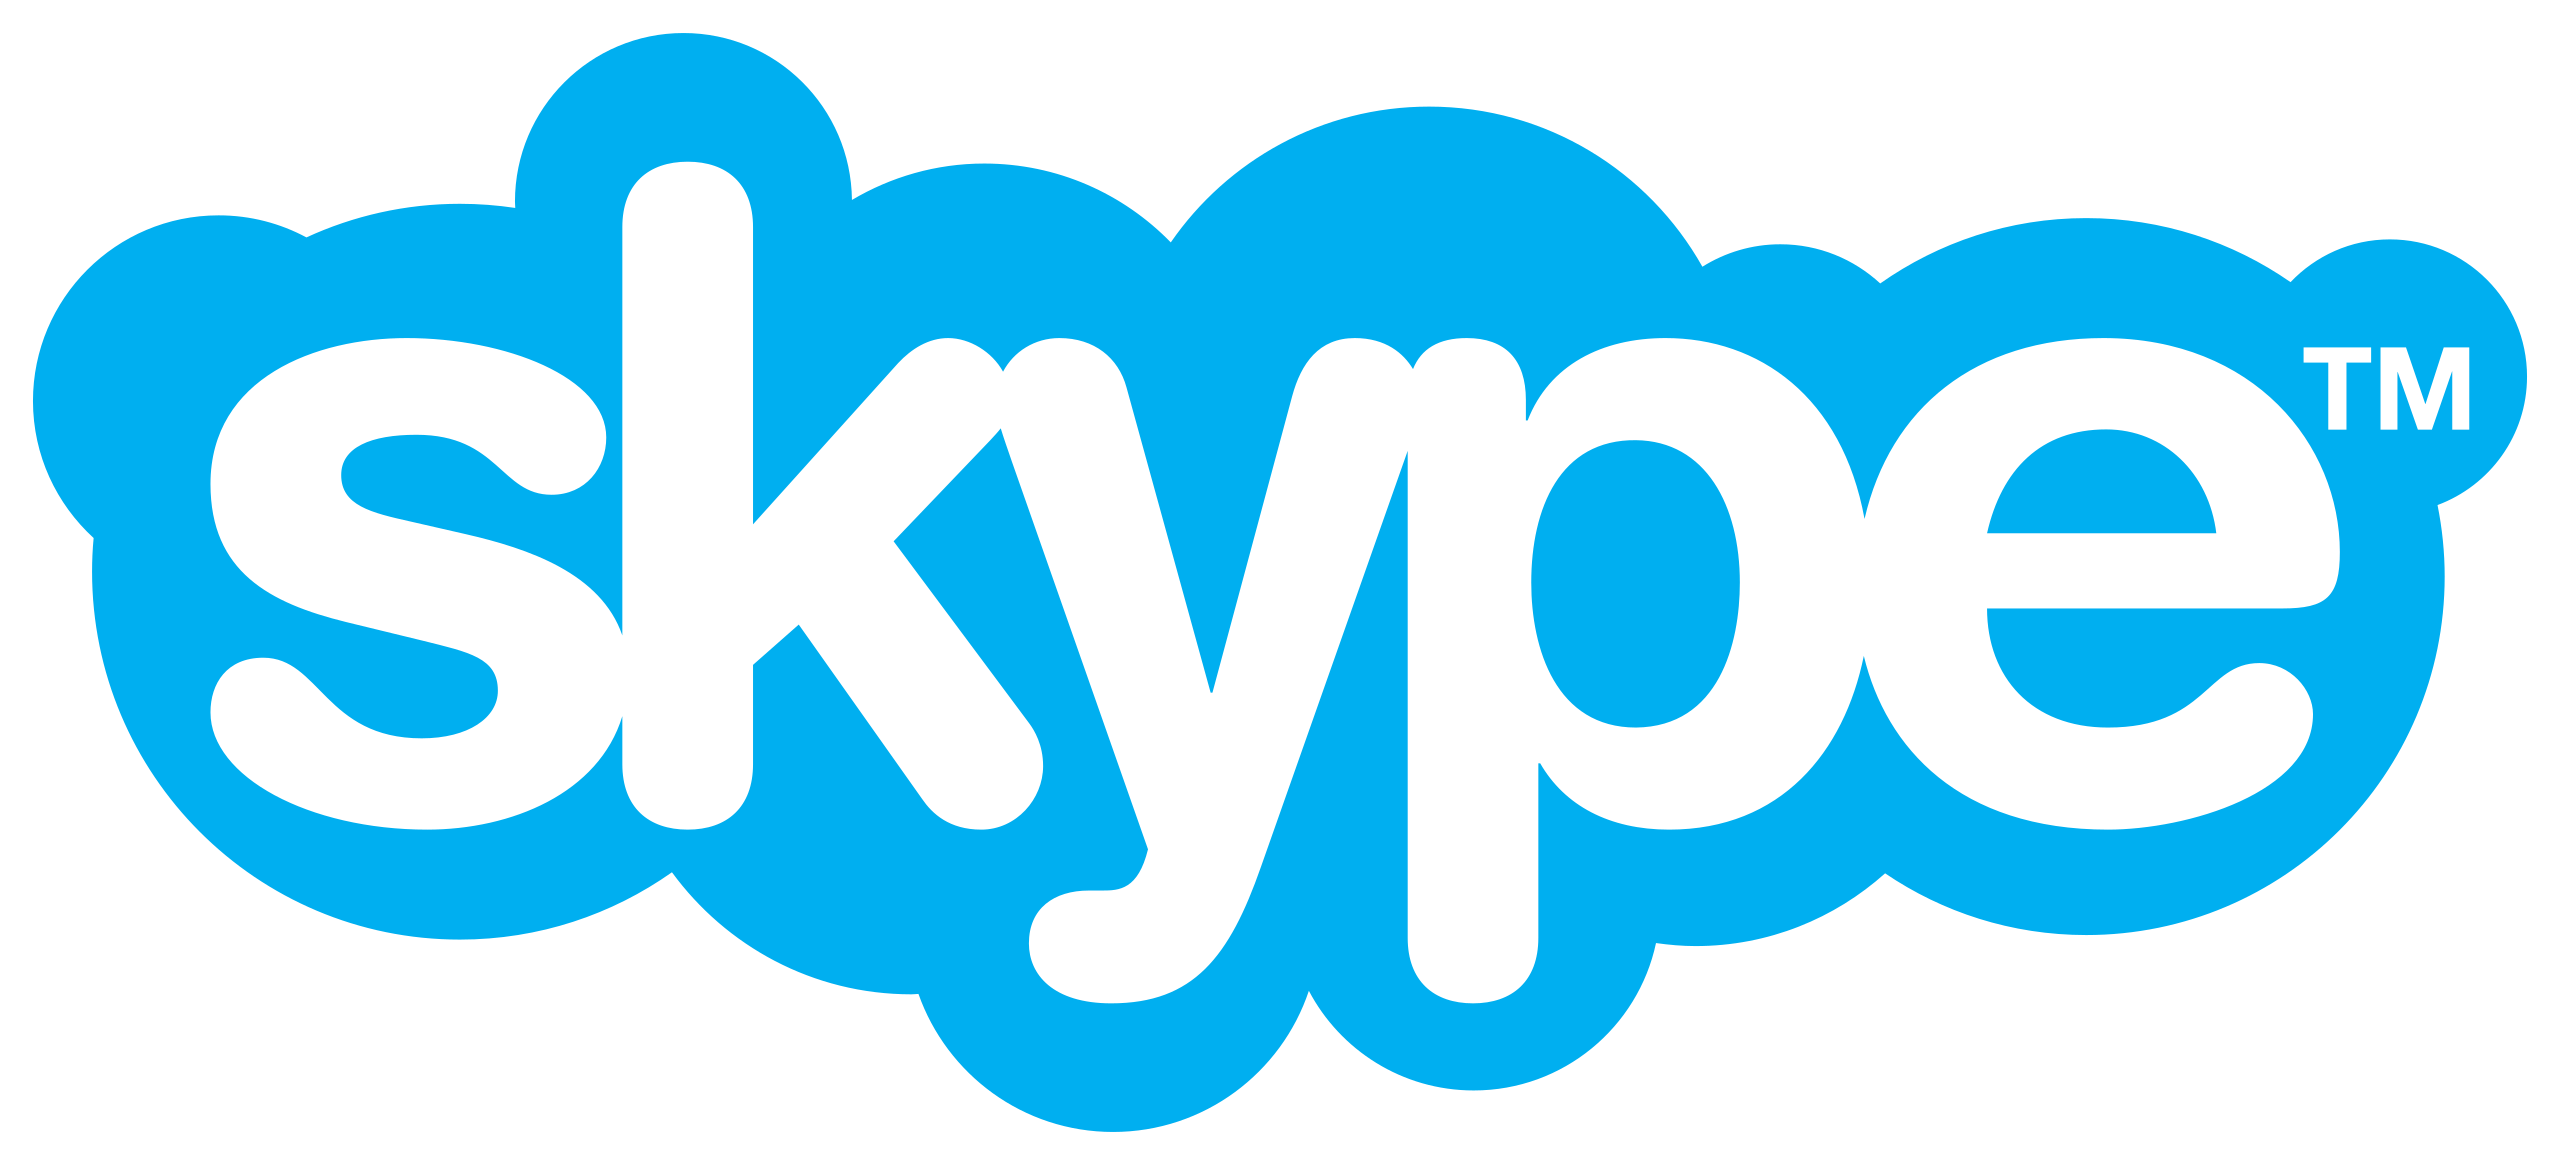 Skype_logo_fully_transparent.svg.png